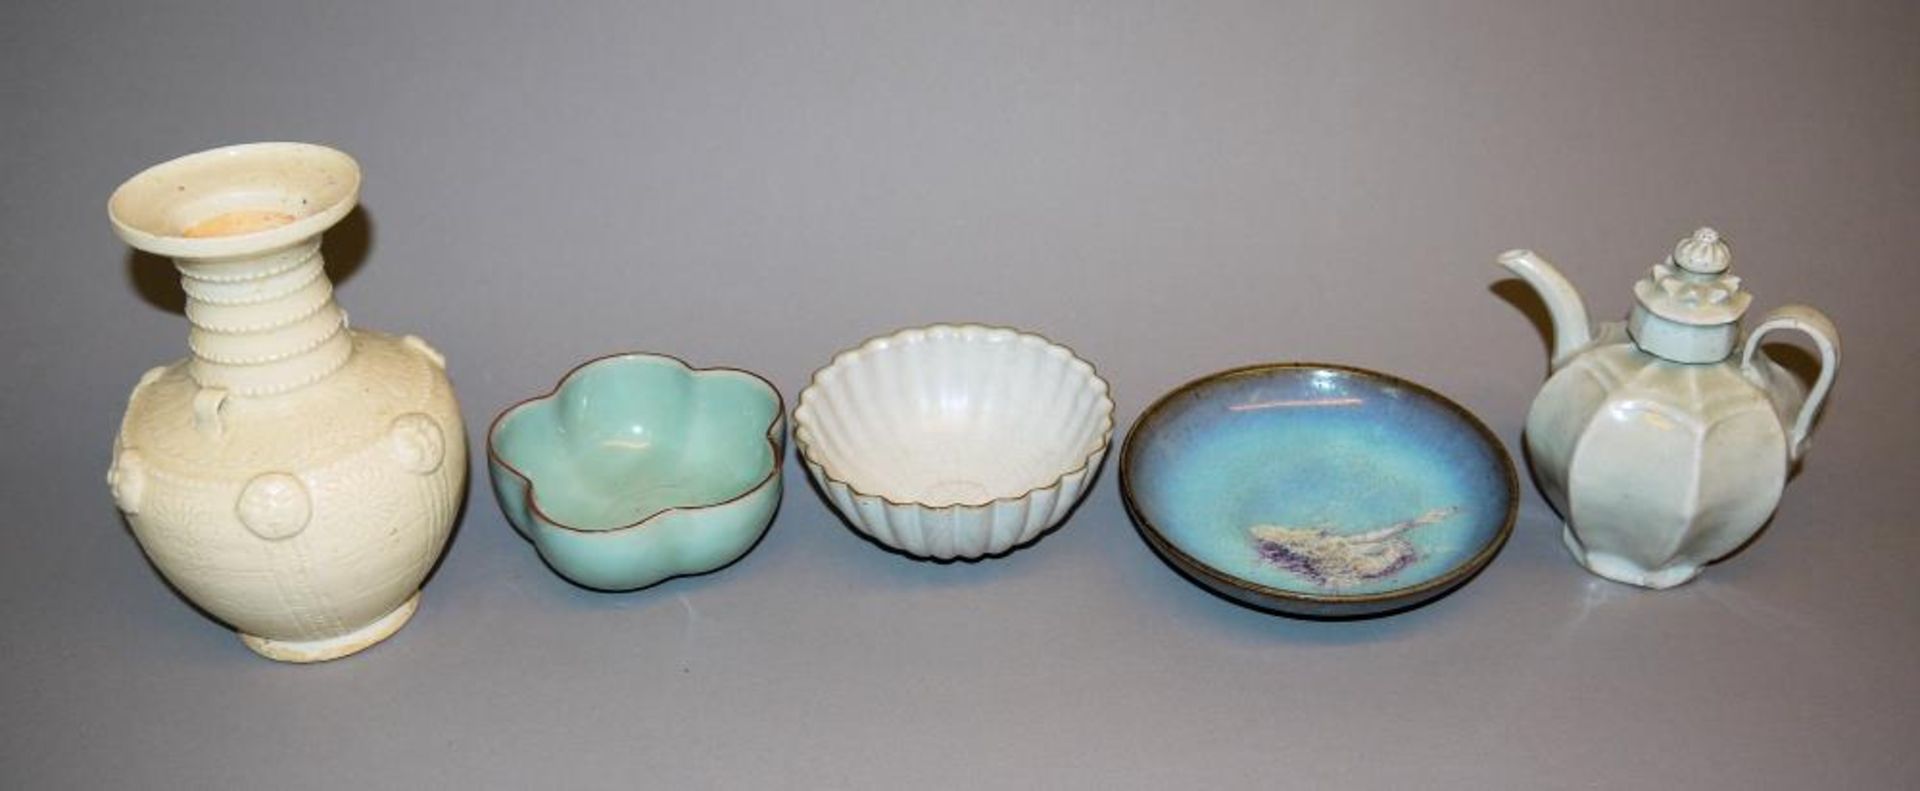 Fünf chinesische Keramiken im Stil der Song-Periode Kännchen mit Seladonglasur, H 14,5 cm; Vase